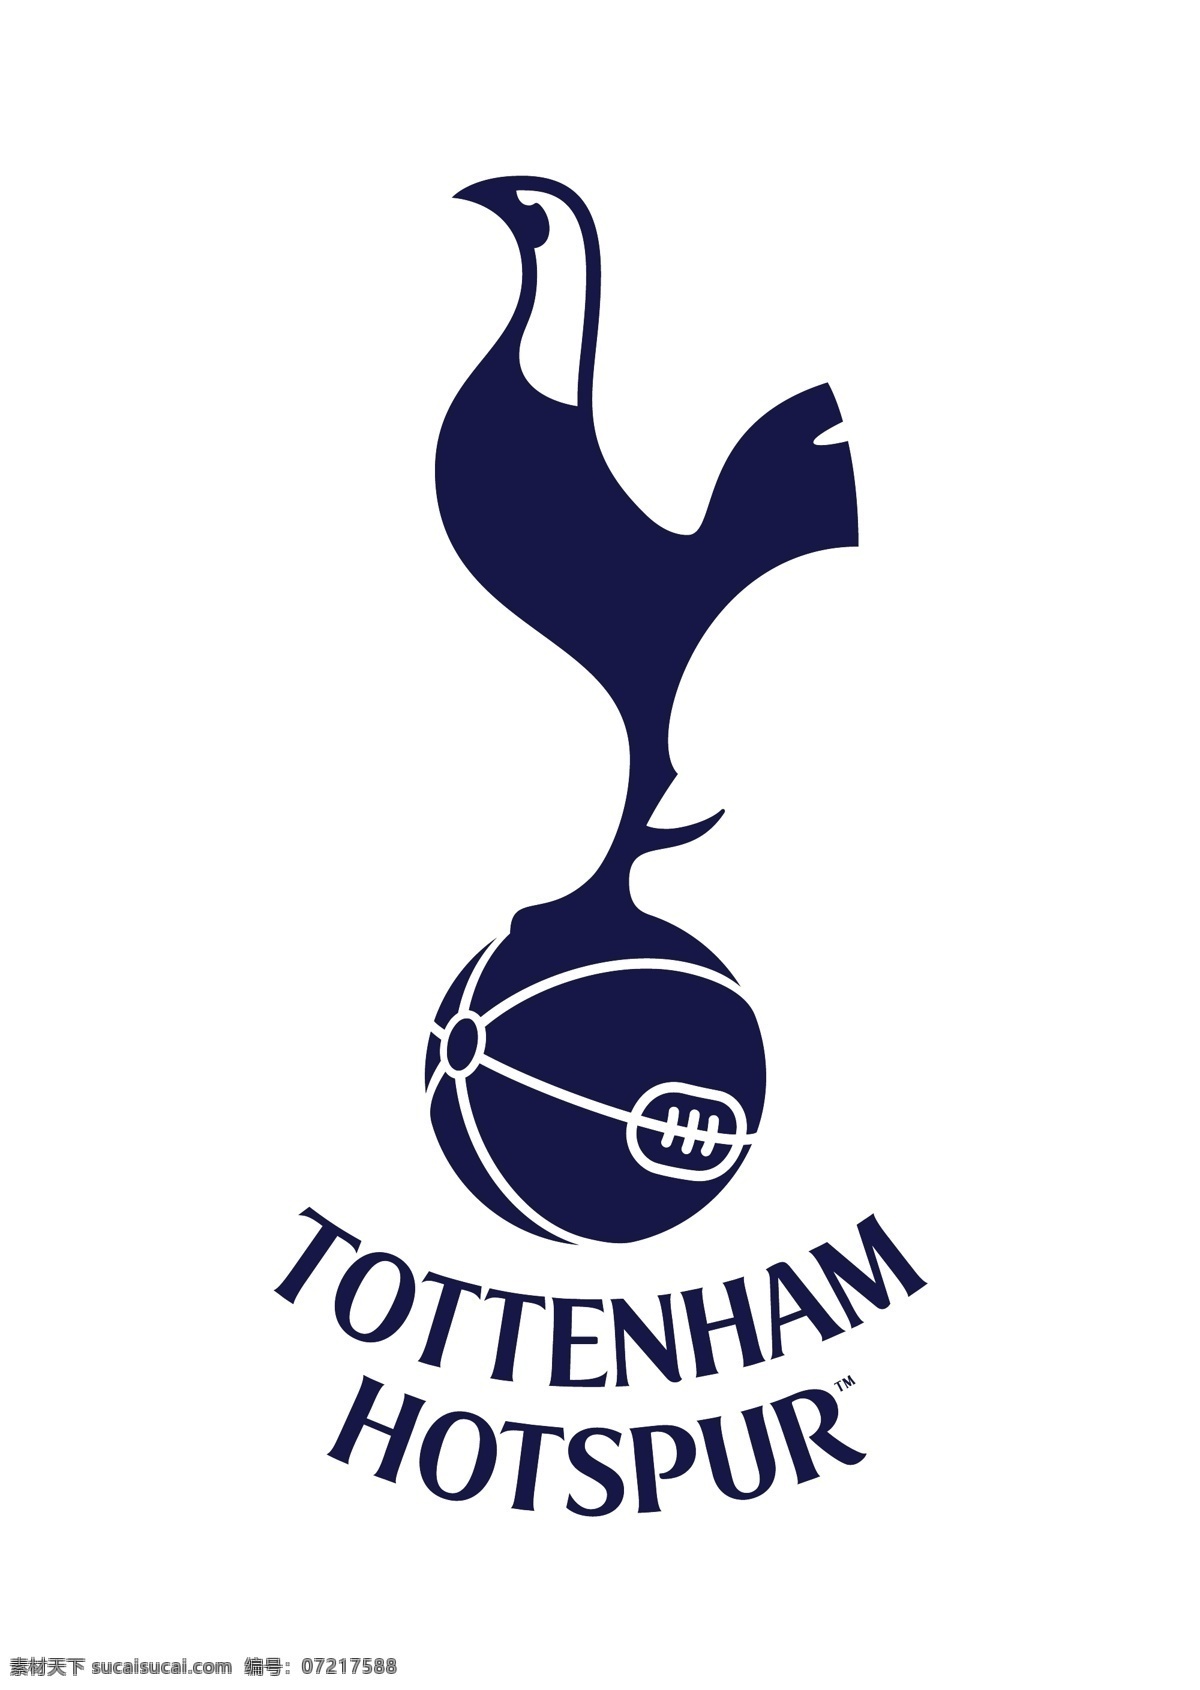 托特纳姆热刺 足球 俱乐部 徽标 托特纳姆 热刺 伦敦 英格兰 超级 联赛 英超 欧冠 欧洲冠军联赛 欧联 欧洲联赛 欧罗巴联赛 欧洲超级杯 欧洲主流联赛 logo设计